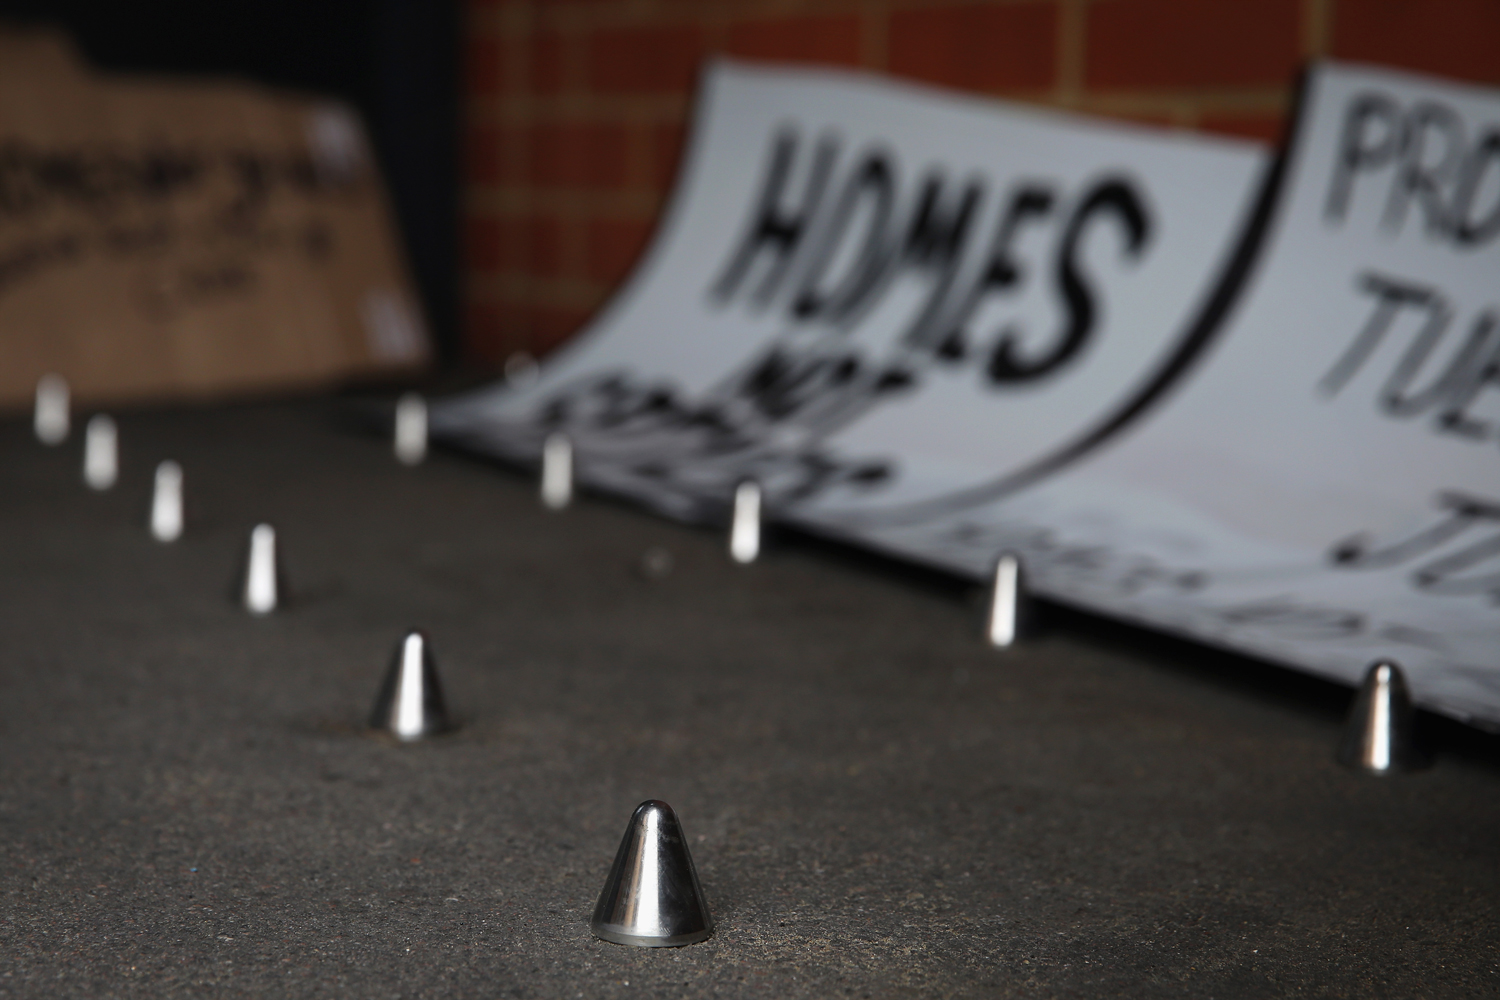 Instalan pinchos "anti-indigentes" en la puerta de un bloque de viviendas en Londres